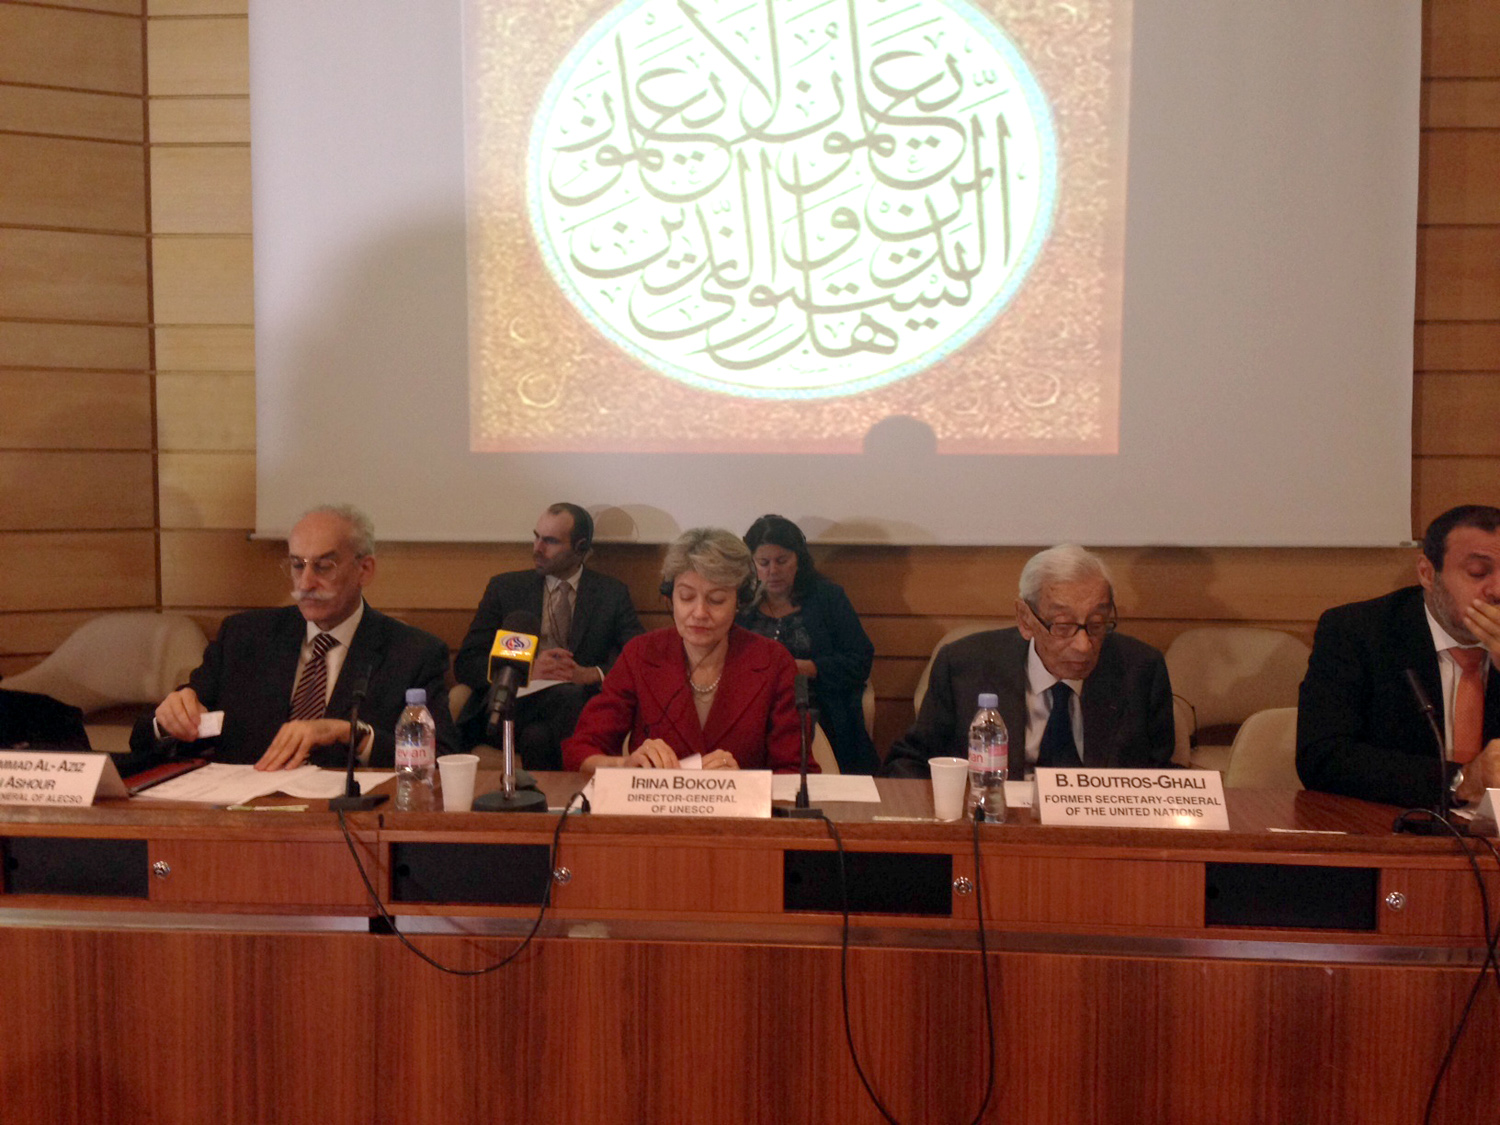 حفل الافتتاح الذي اقامته منظمة اليونسكو في باريس بمناسبة اليوم العالمي للغة العربية